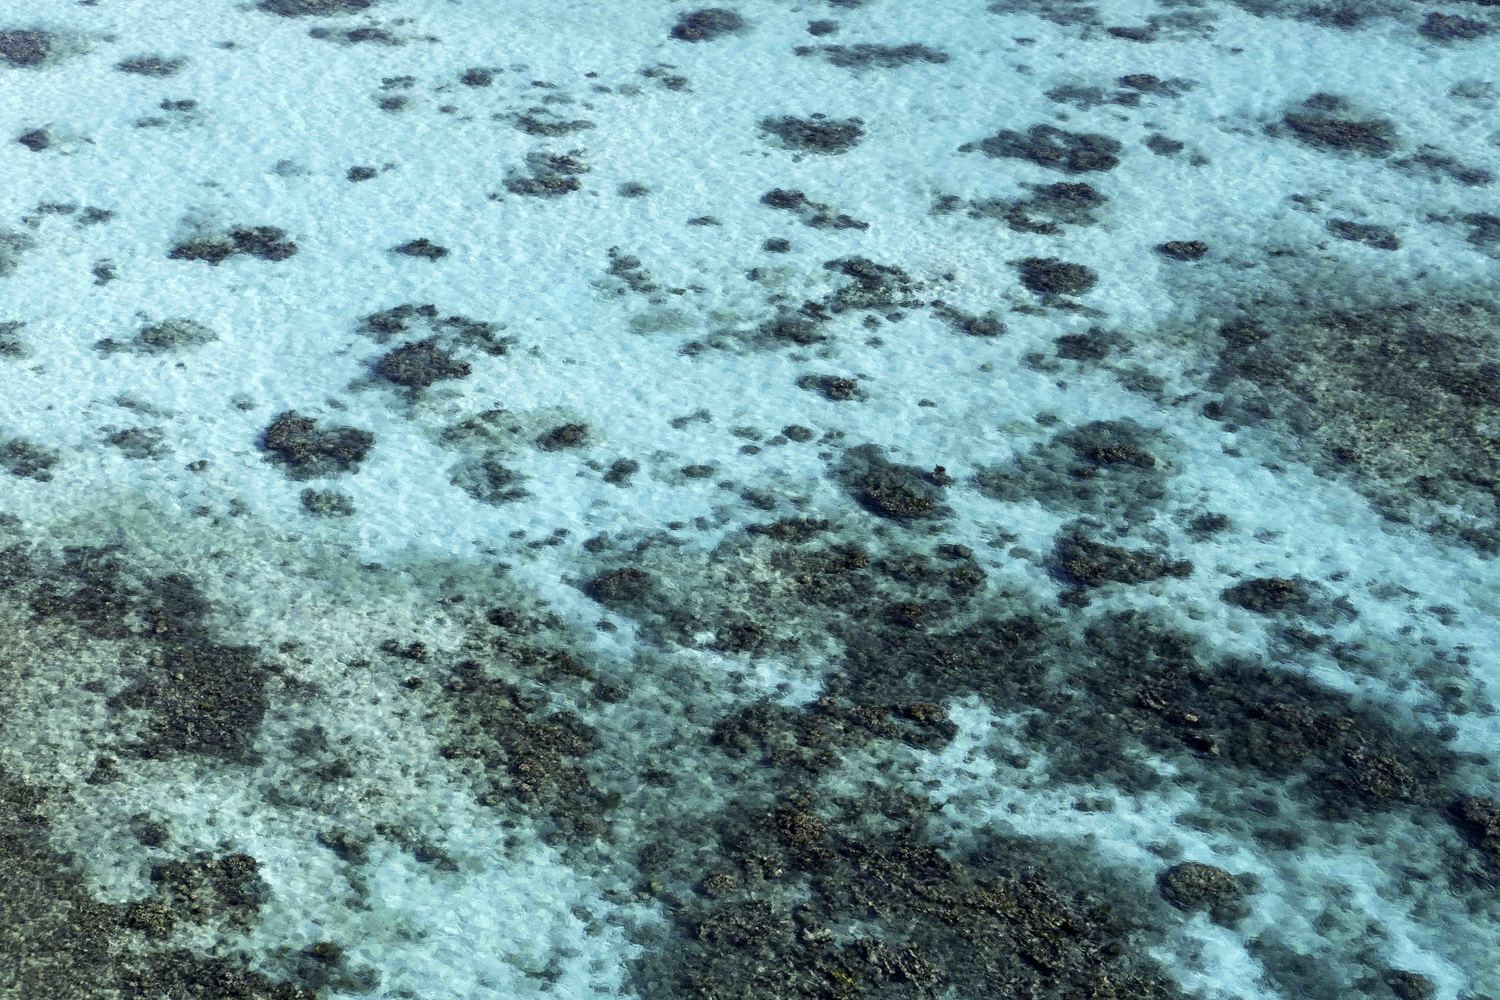 Culebrita Reef No 2